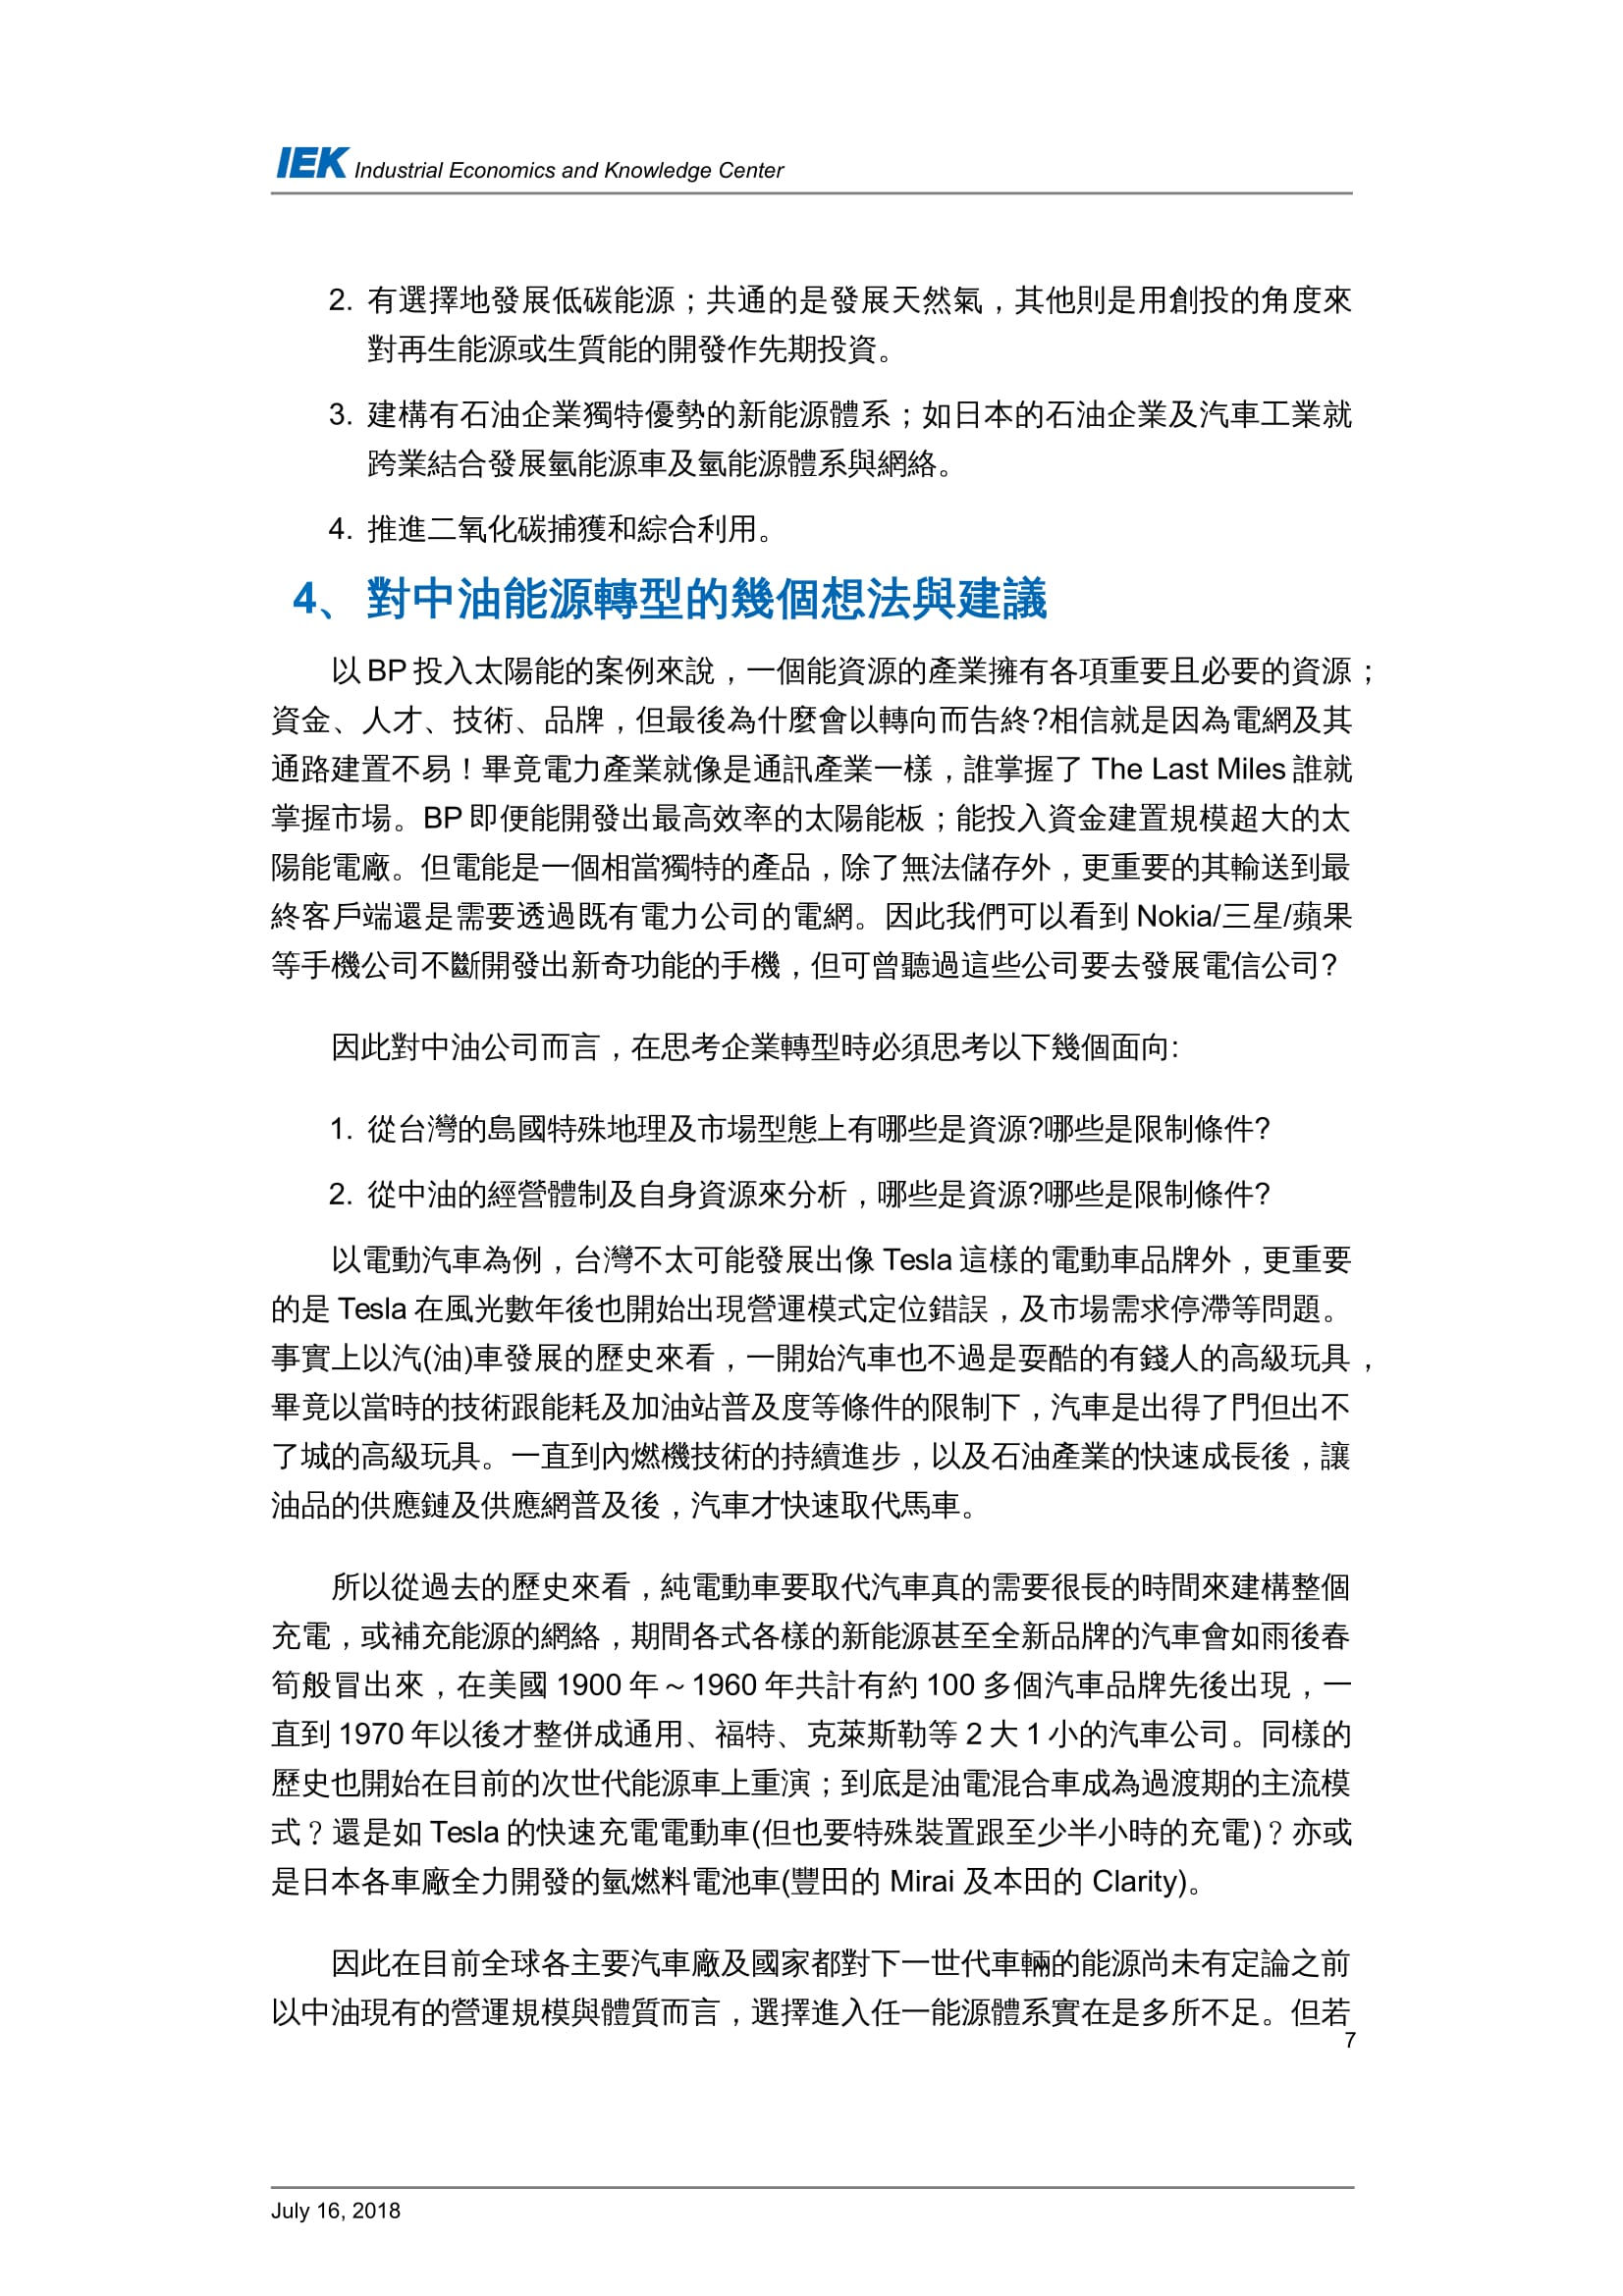 從國外石油產業的轉型看台灣中油的轉型策略_共11頁_第9頁內文(詳如下方附件)